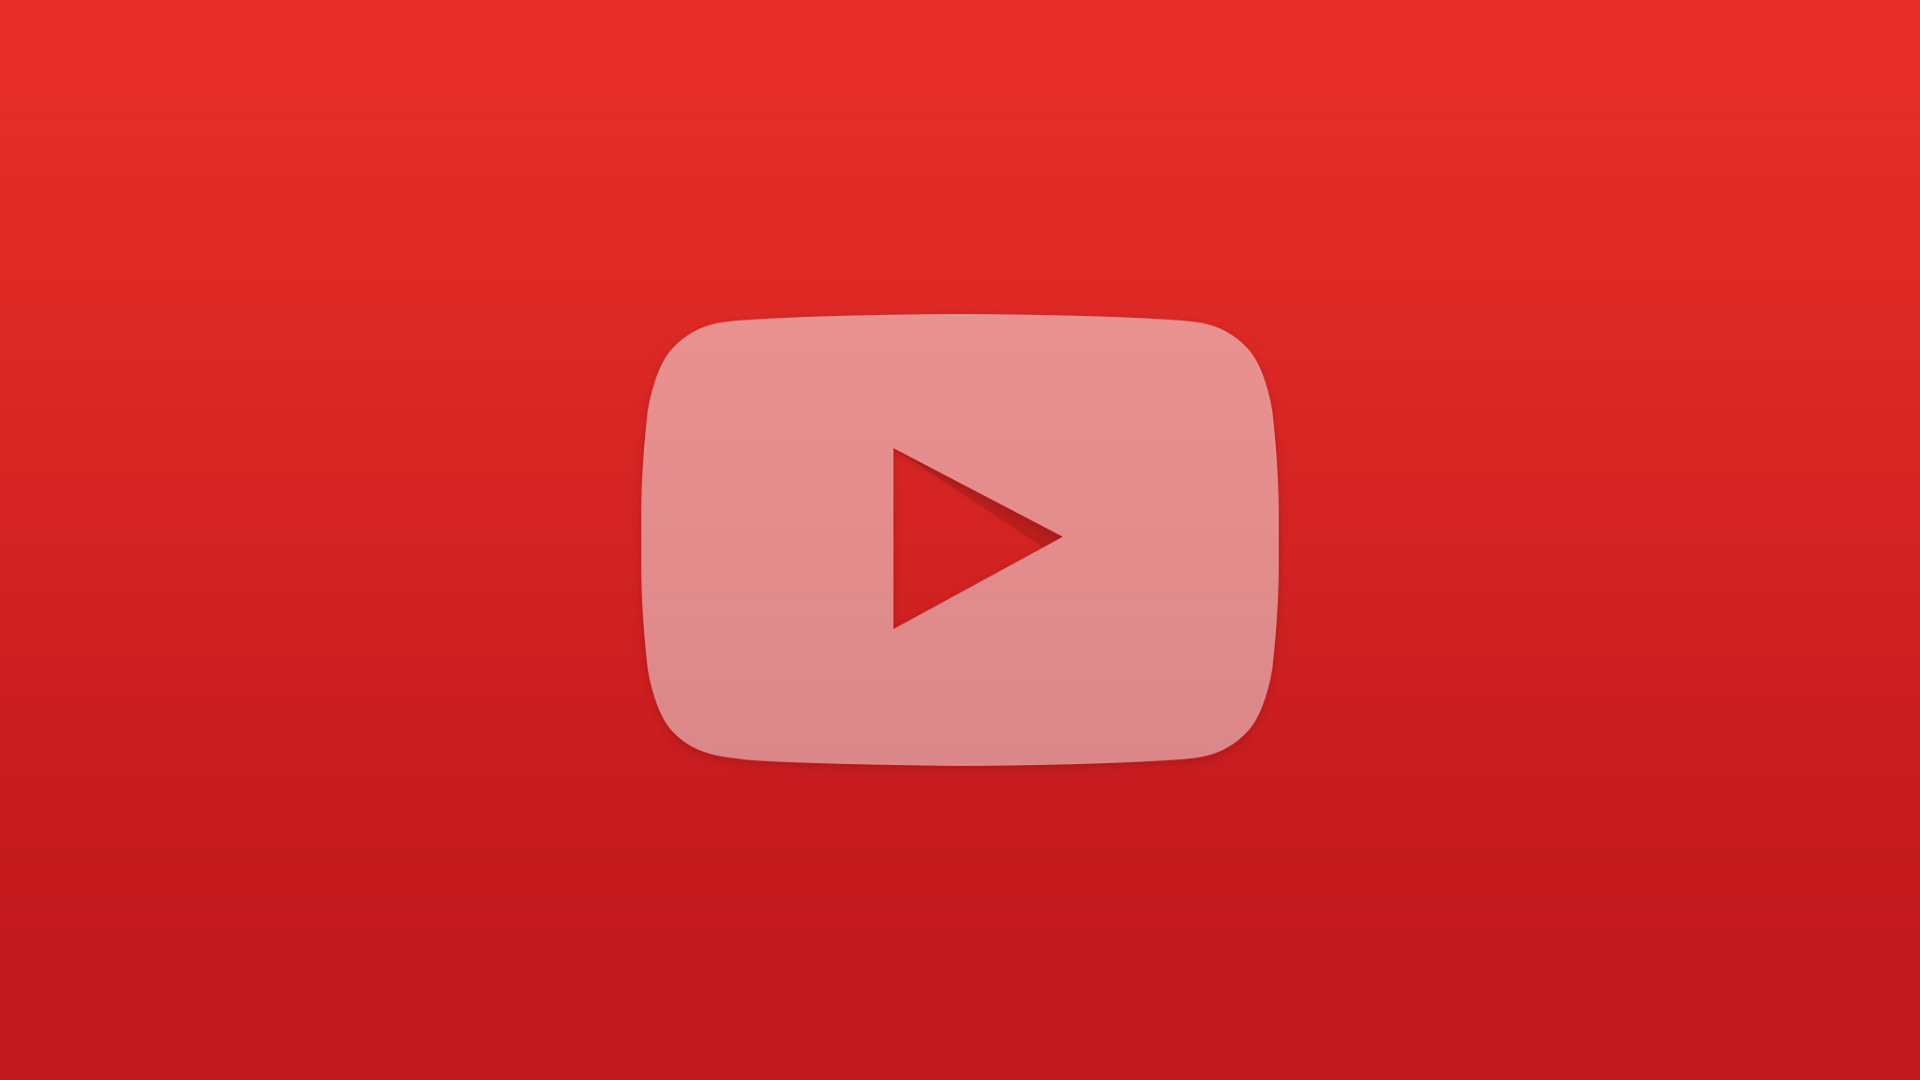 유튜브 로고 벽지,빨간,폰트,본문,상,카민